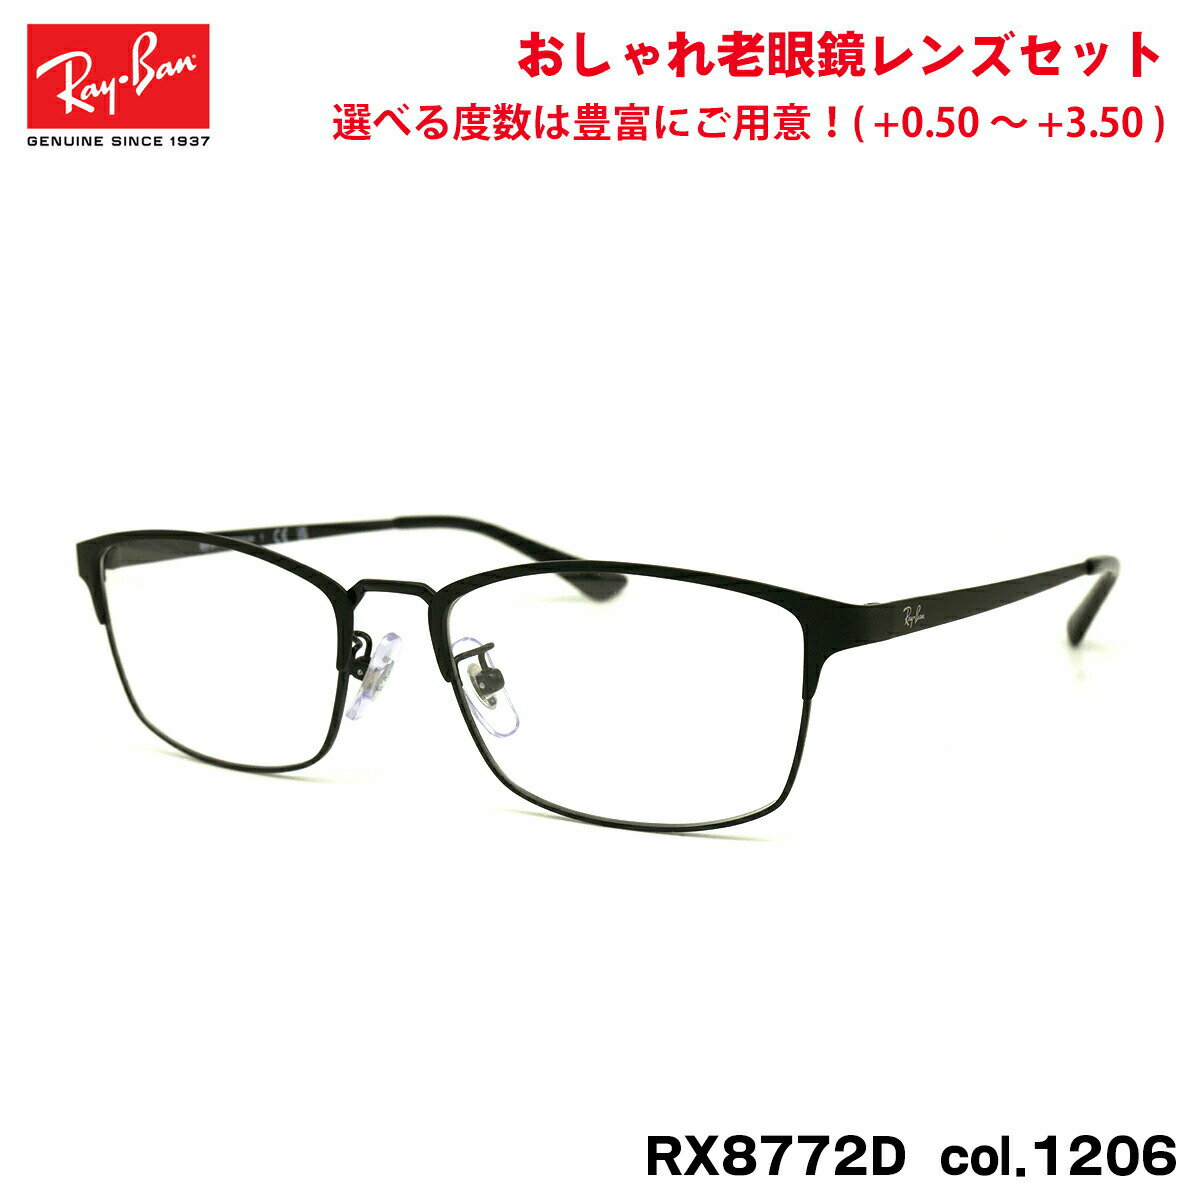 レイバン 老眼鏡 RX8772D (RB8772D) 1206 54mm Ray-Ban ブルーライトカット UVカット